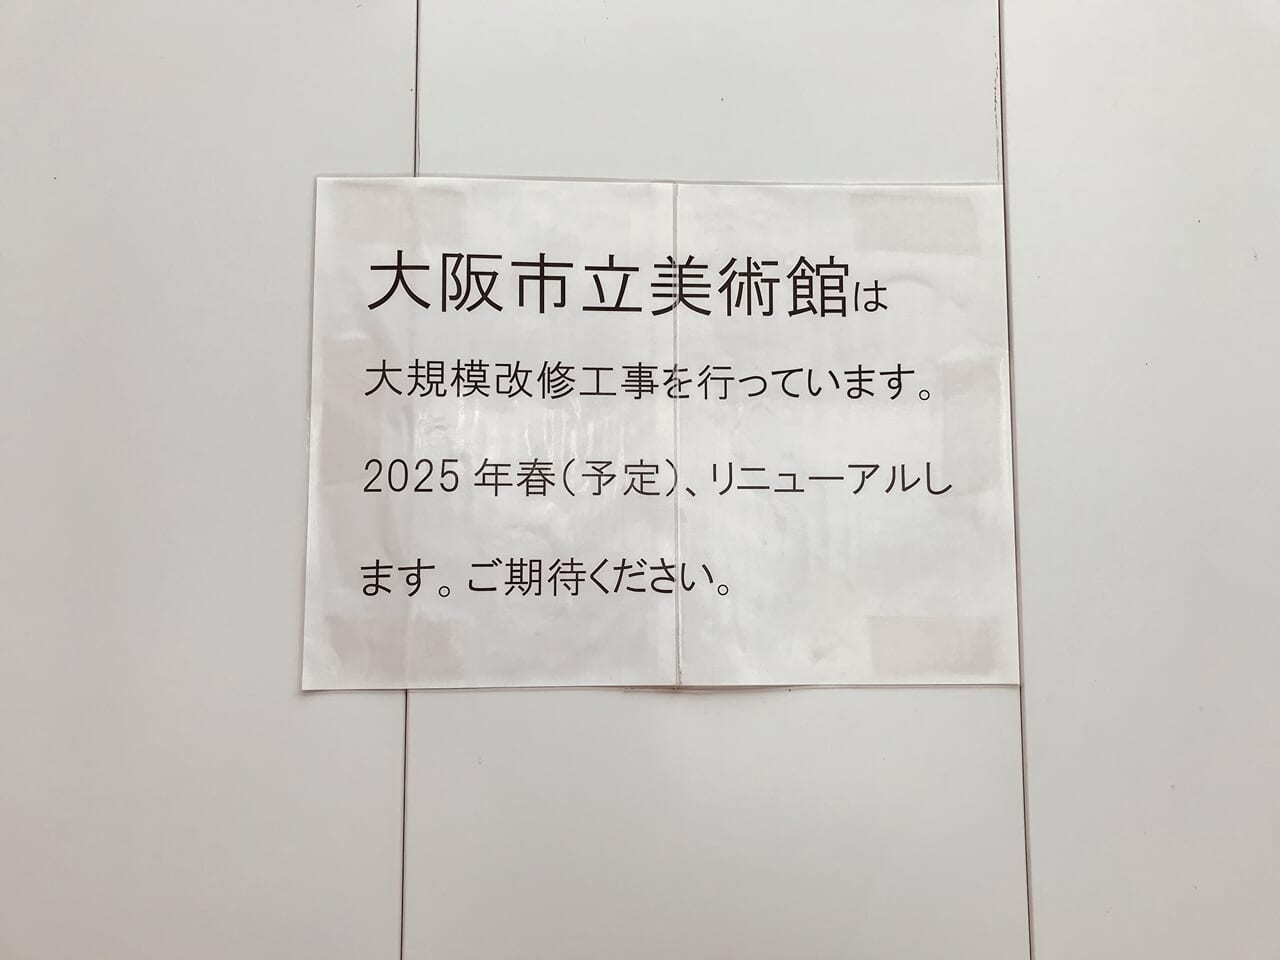 大阪市立美術館の貼り紙